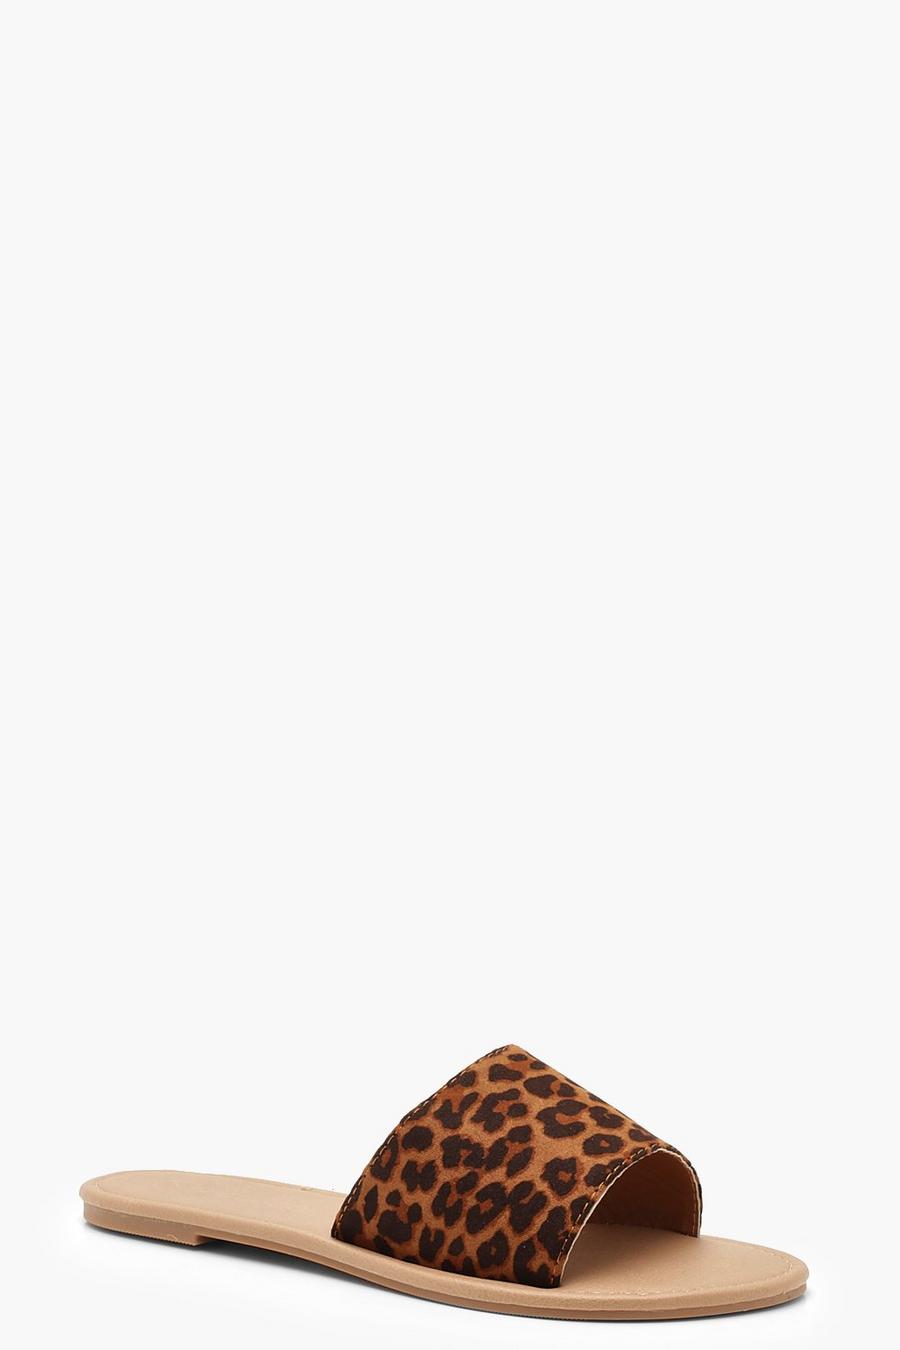 Sandalias básicas de leopardo